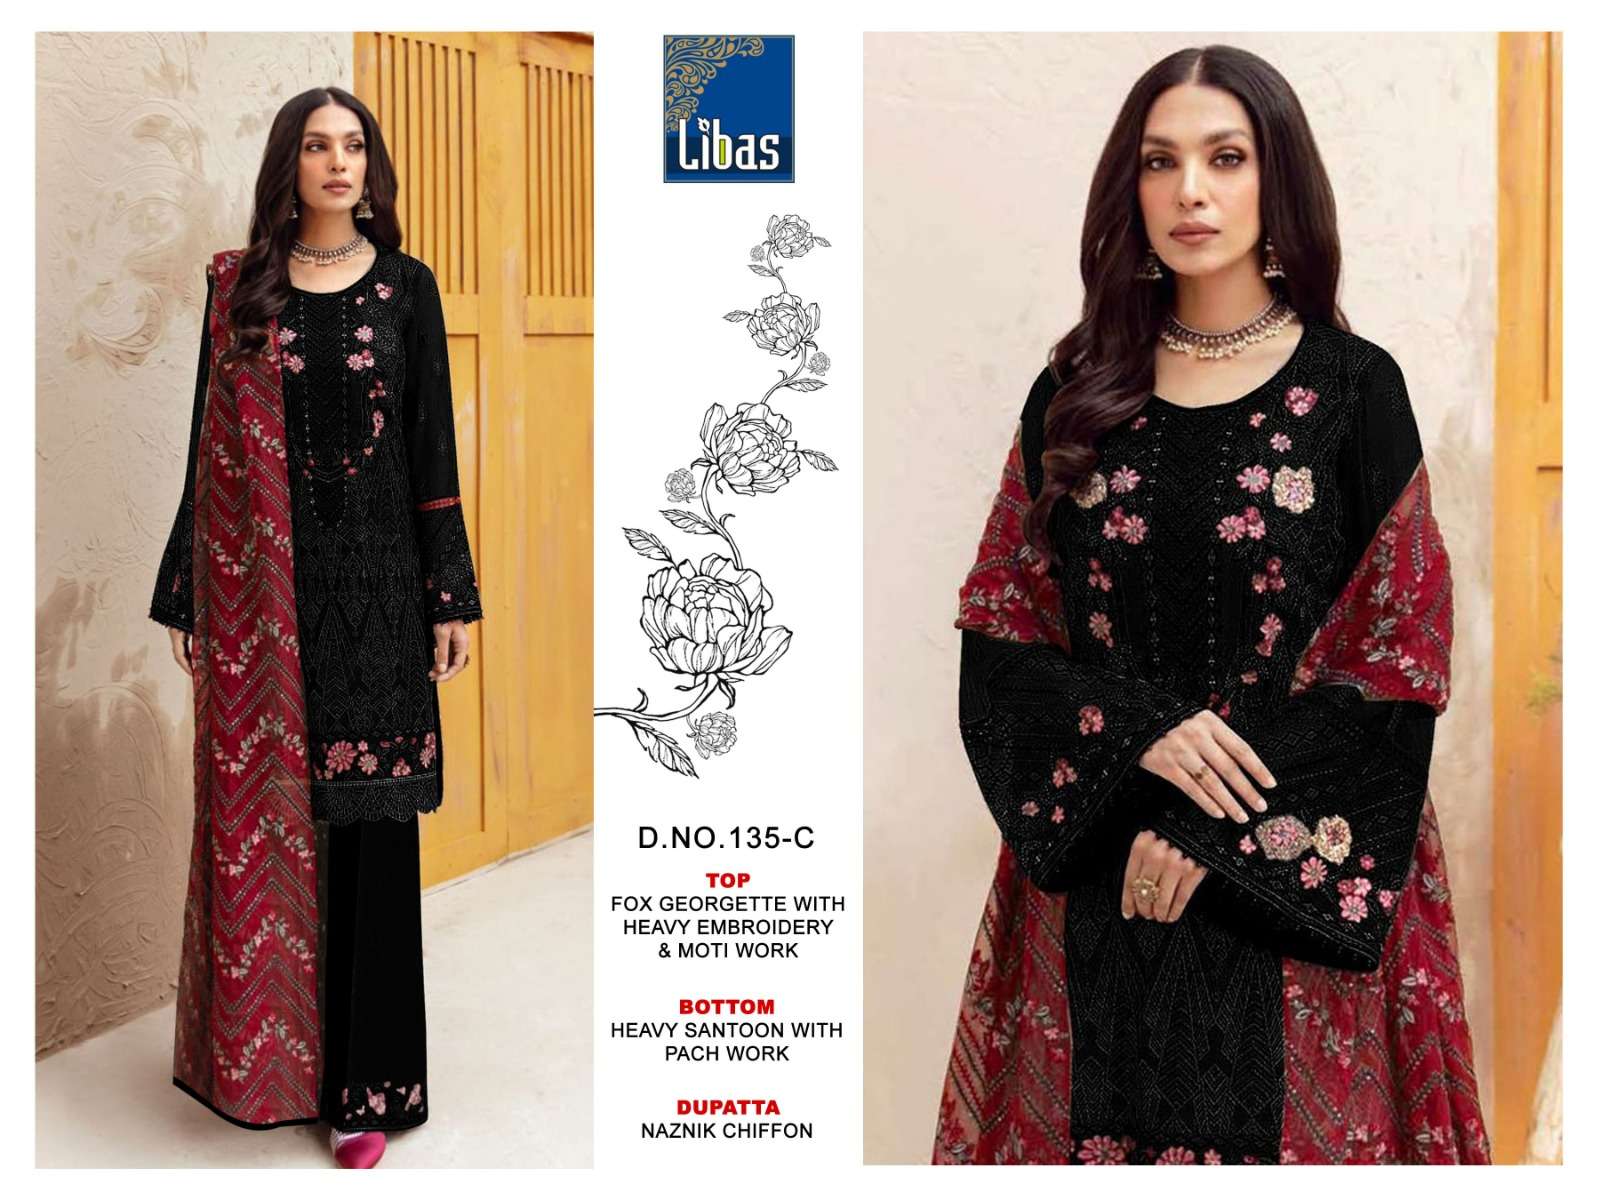 libas 135 series faux georgette designer pakistani salwar suits online market surat 